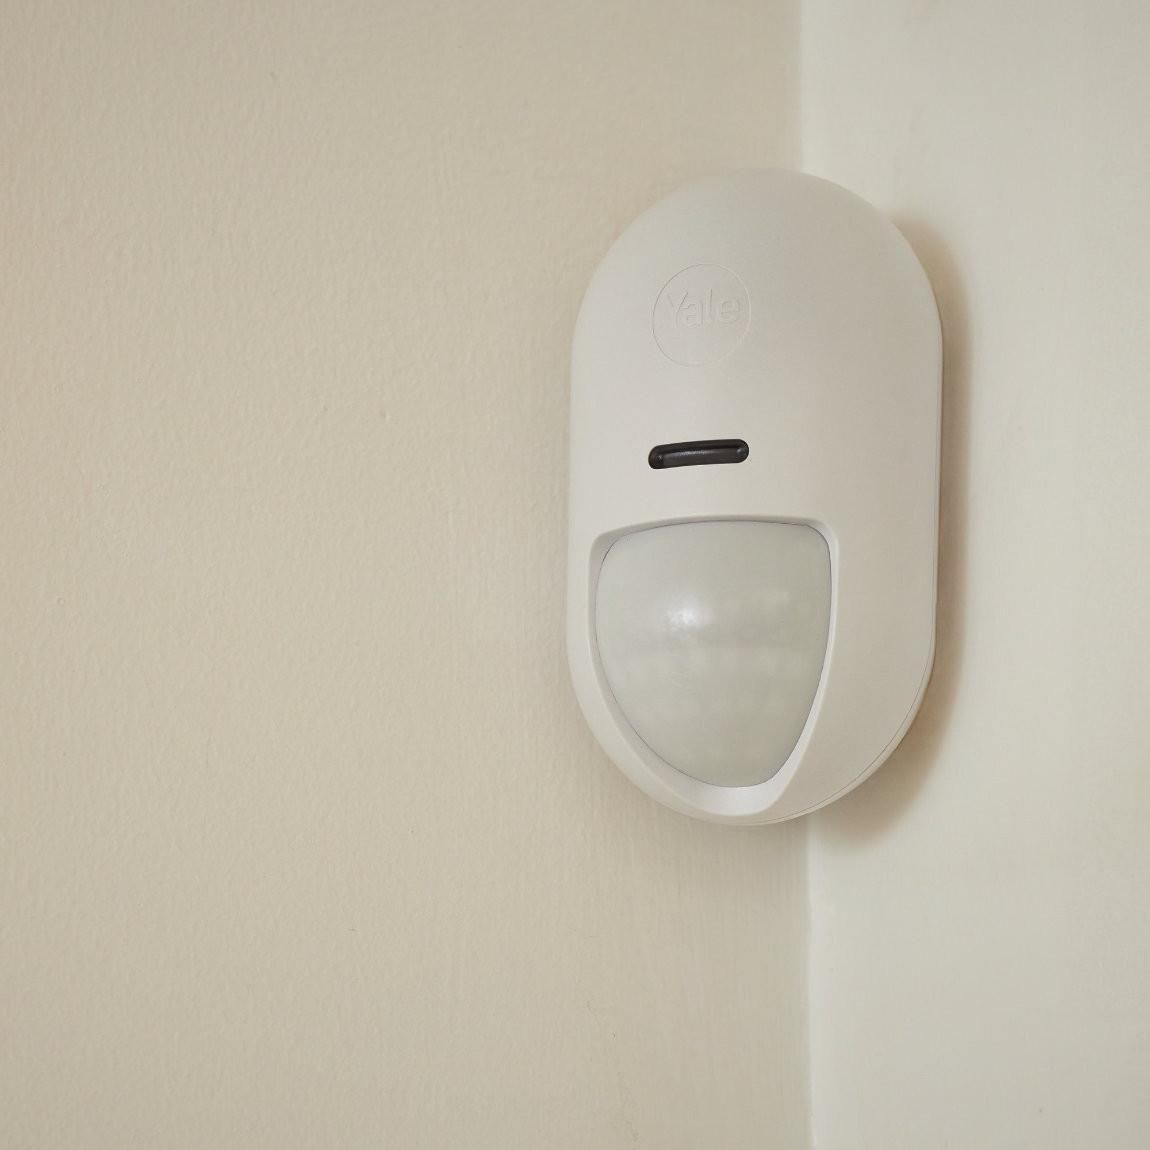 Yale Smart Alarm Indoor Motion Sensor - Smarter Bewegungssensor Innen